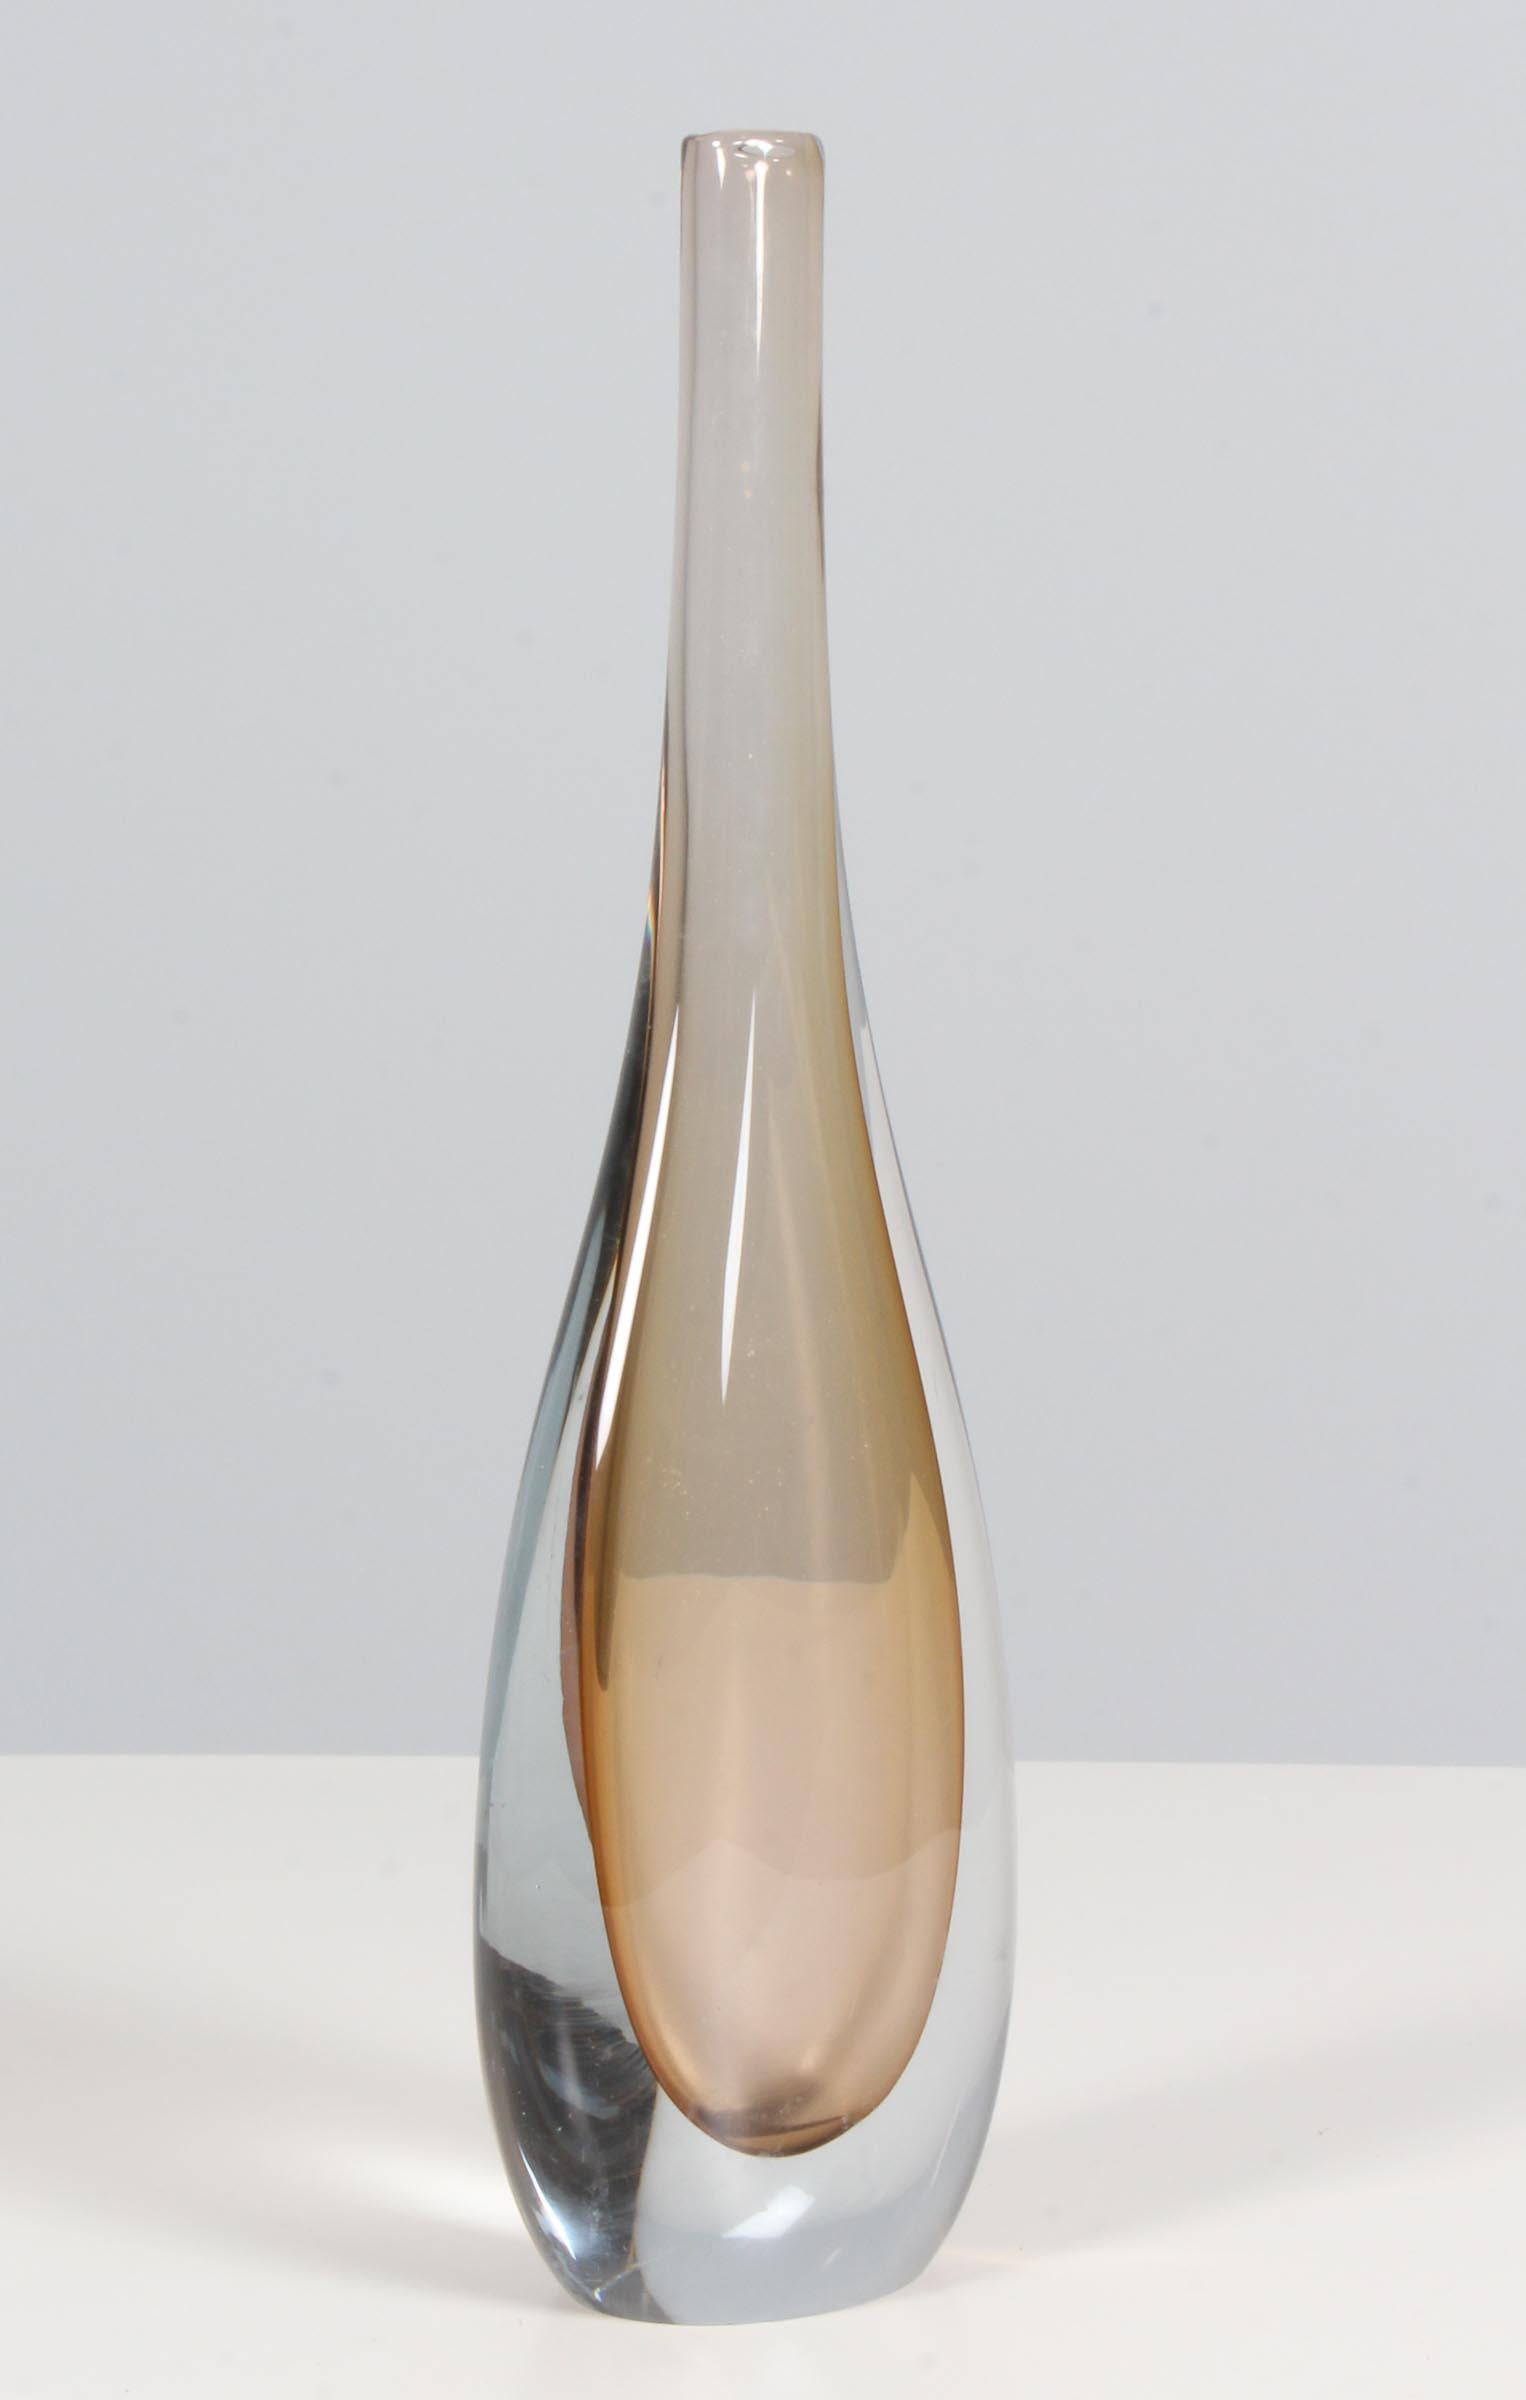 Dekorative Vase von Flavio Poli für Seguso Milano aus den 1960er Jahren. Das Produkt ist aus getauchtem Murano-Glas hergestellt.
